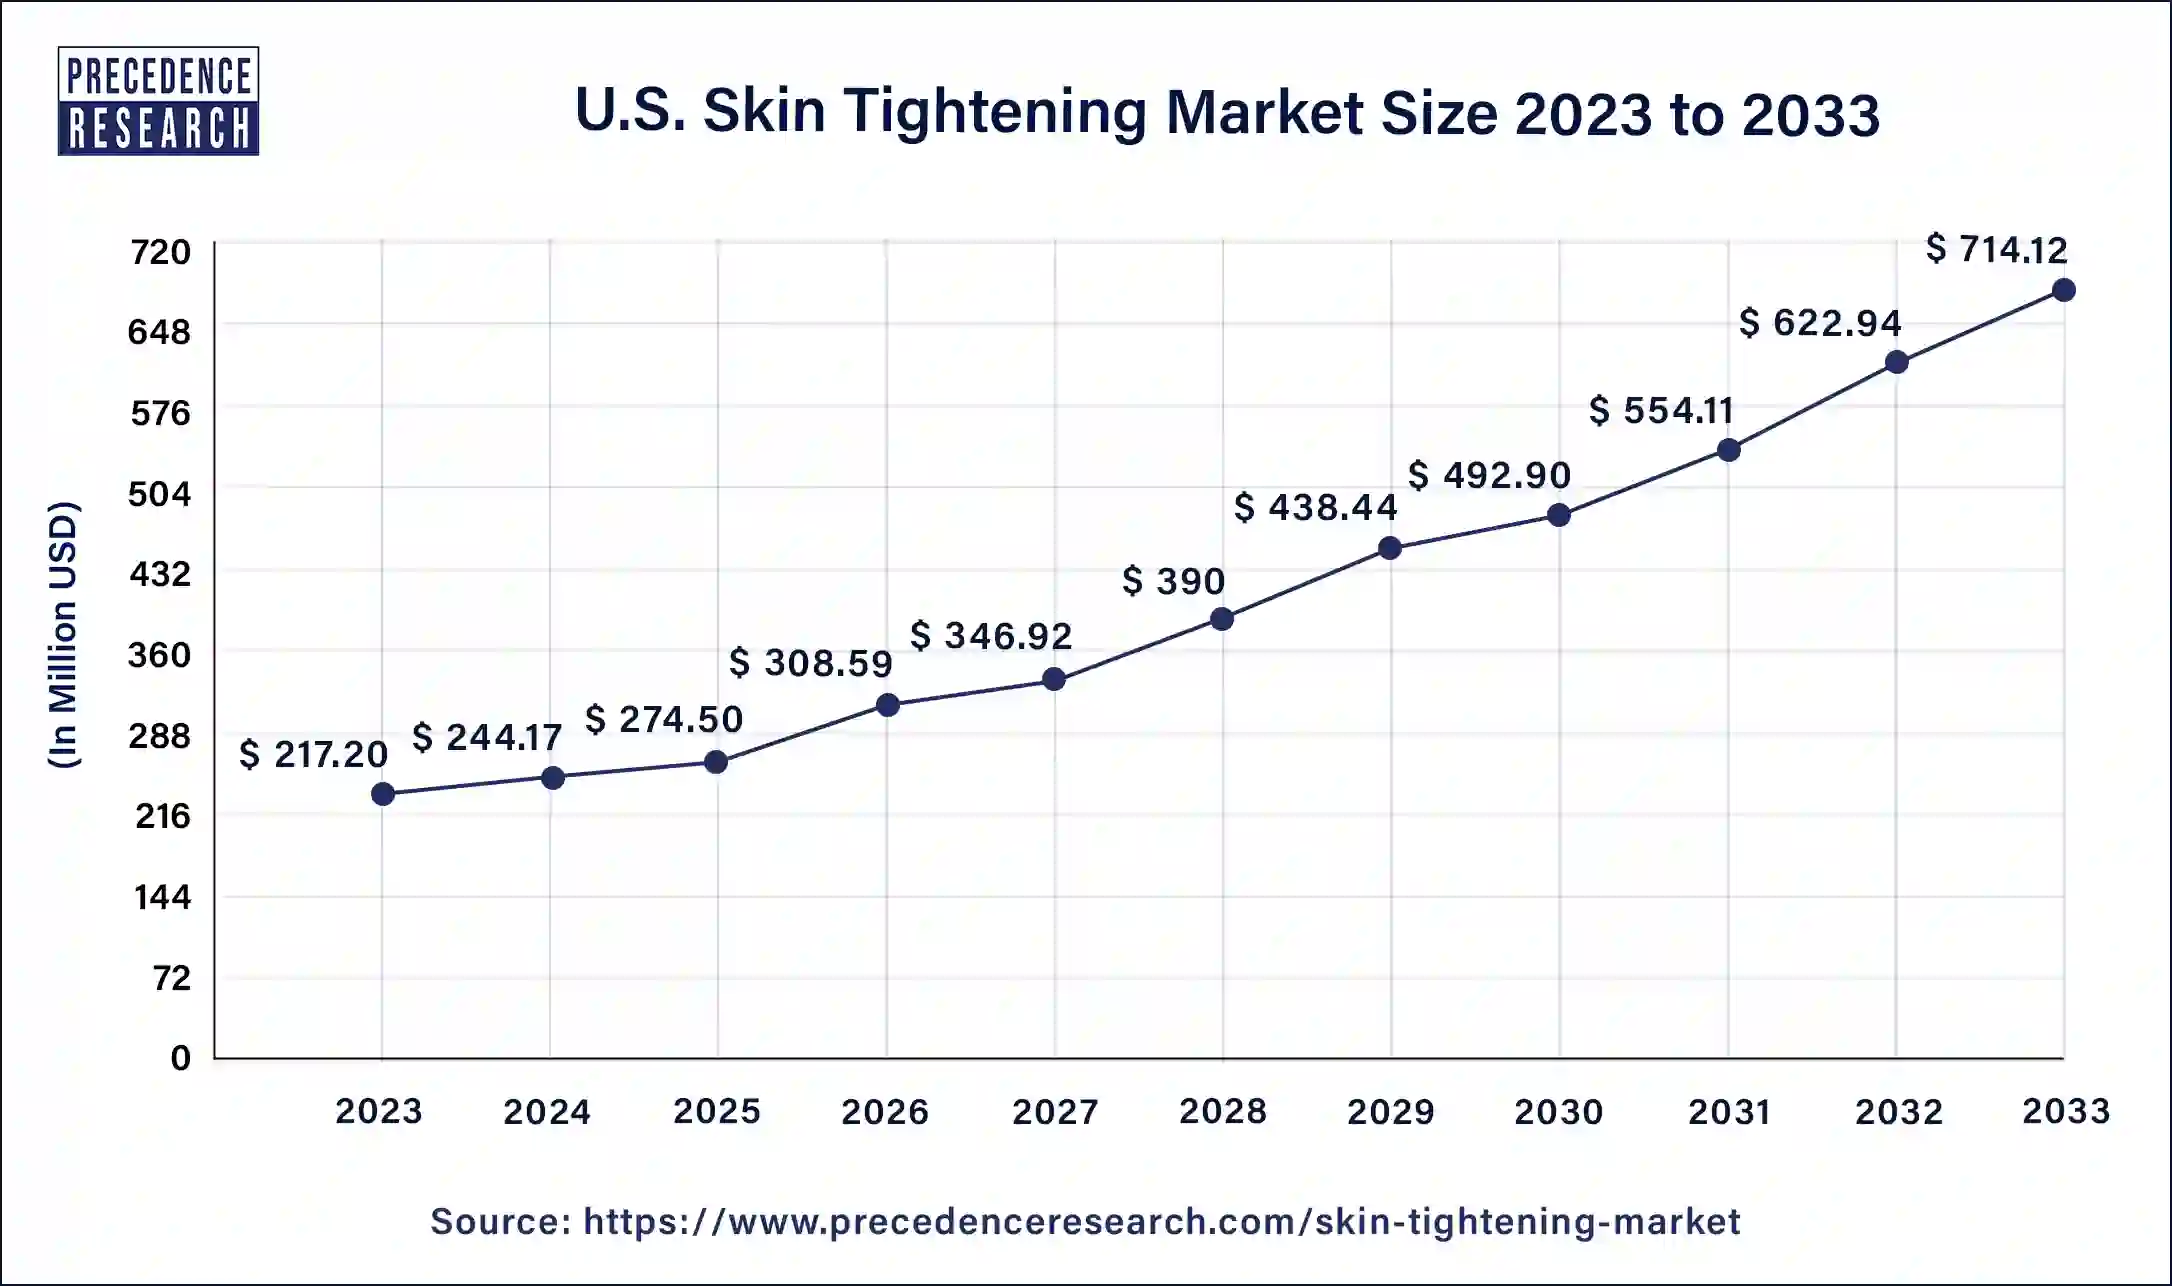 U.S. Skin Tightening Market Size 2024 to 2033